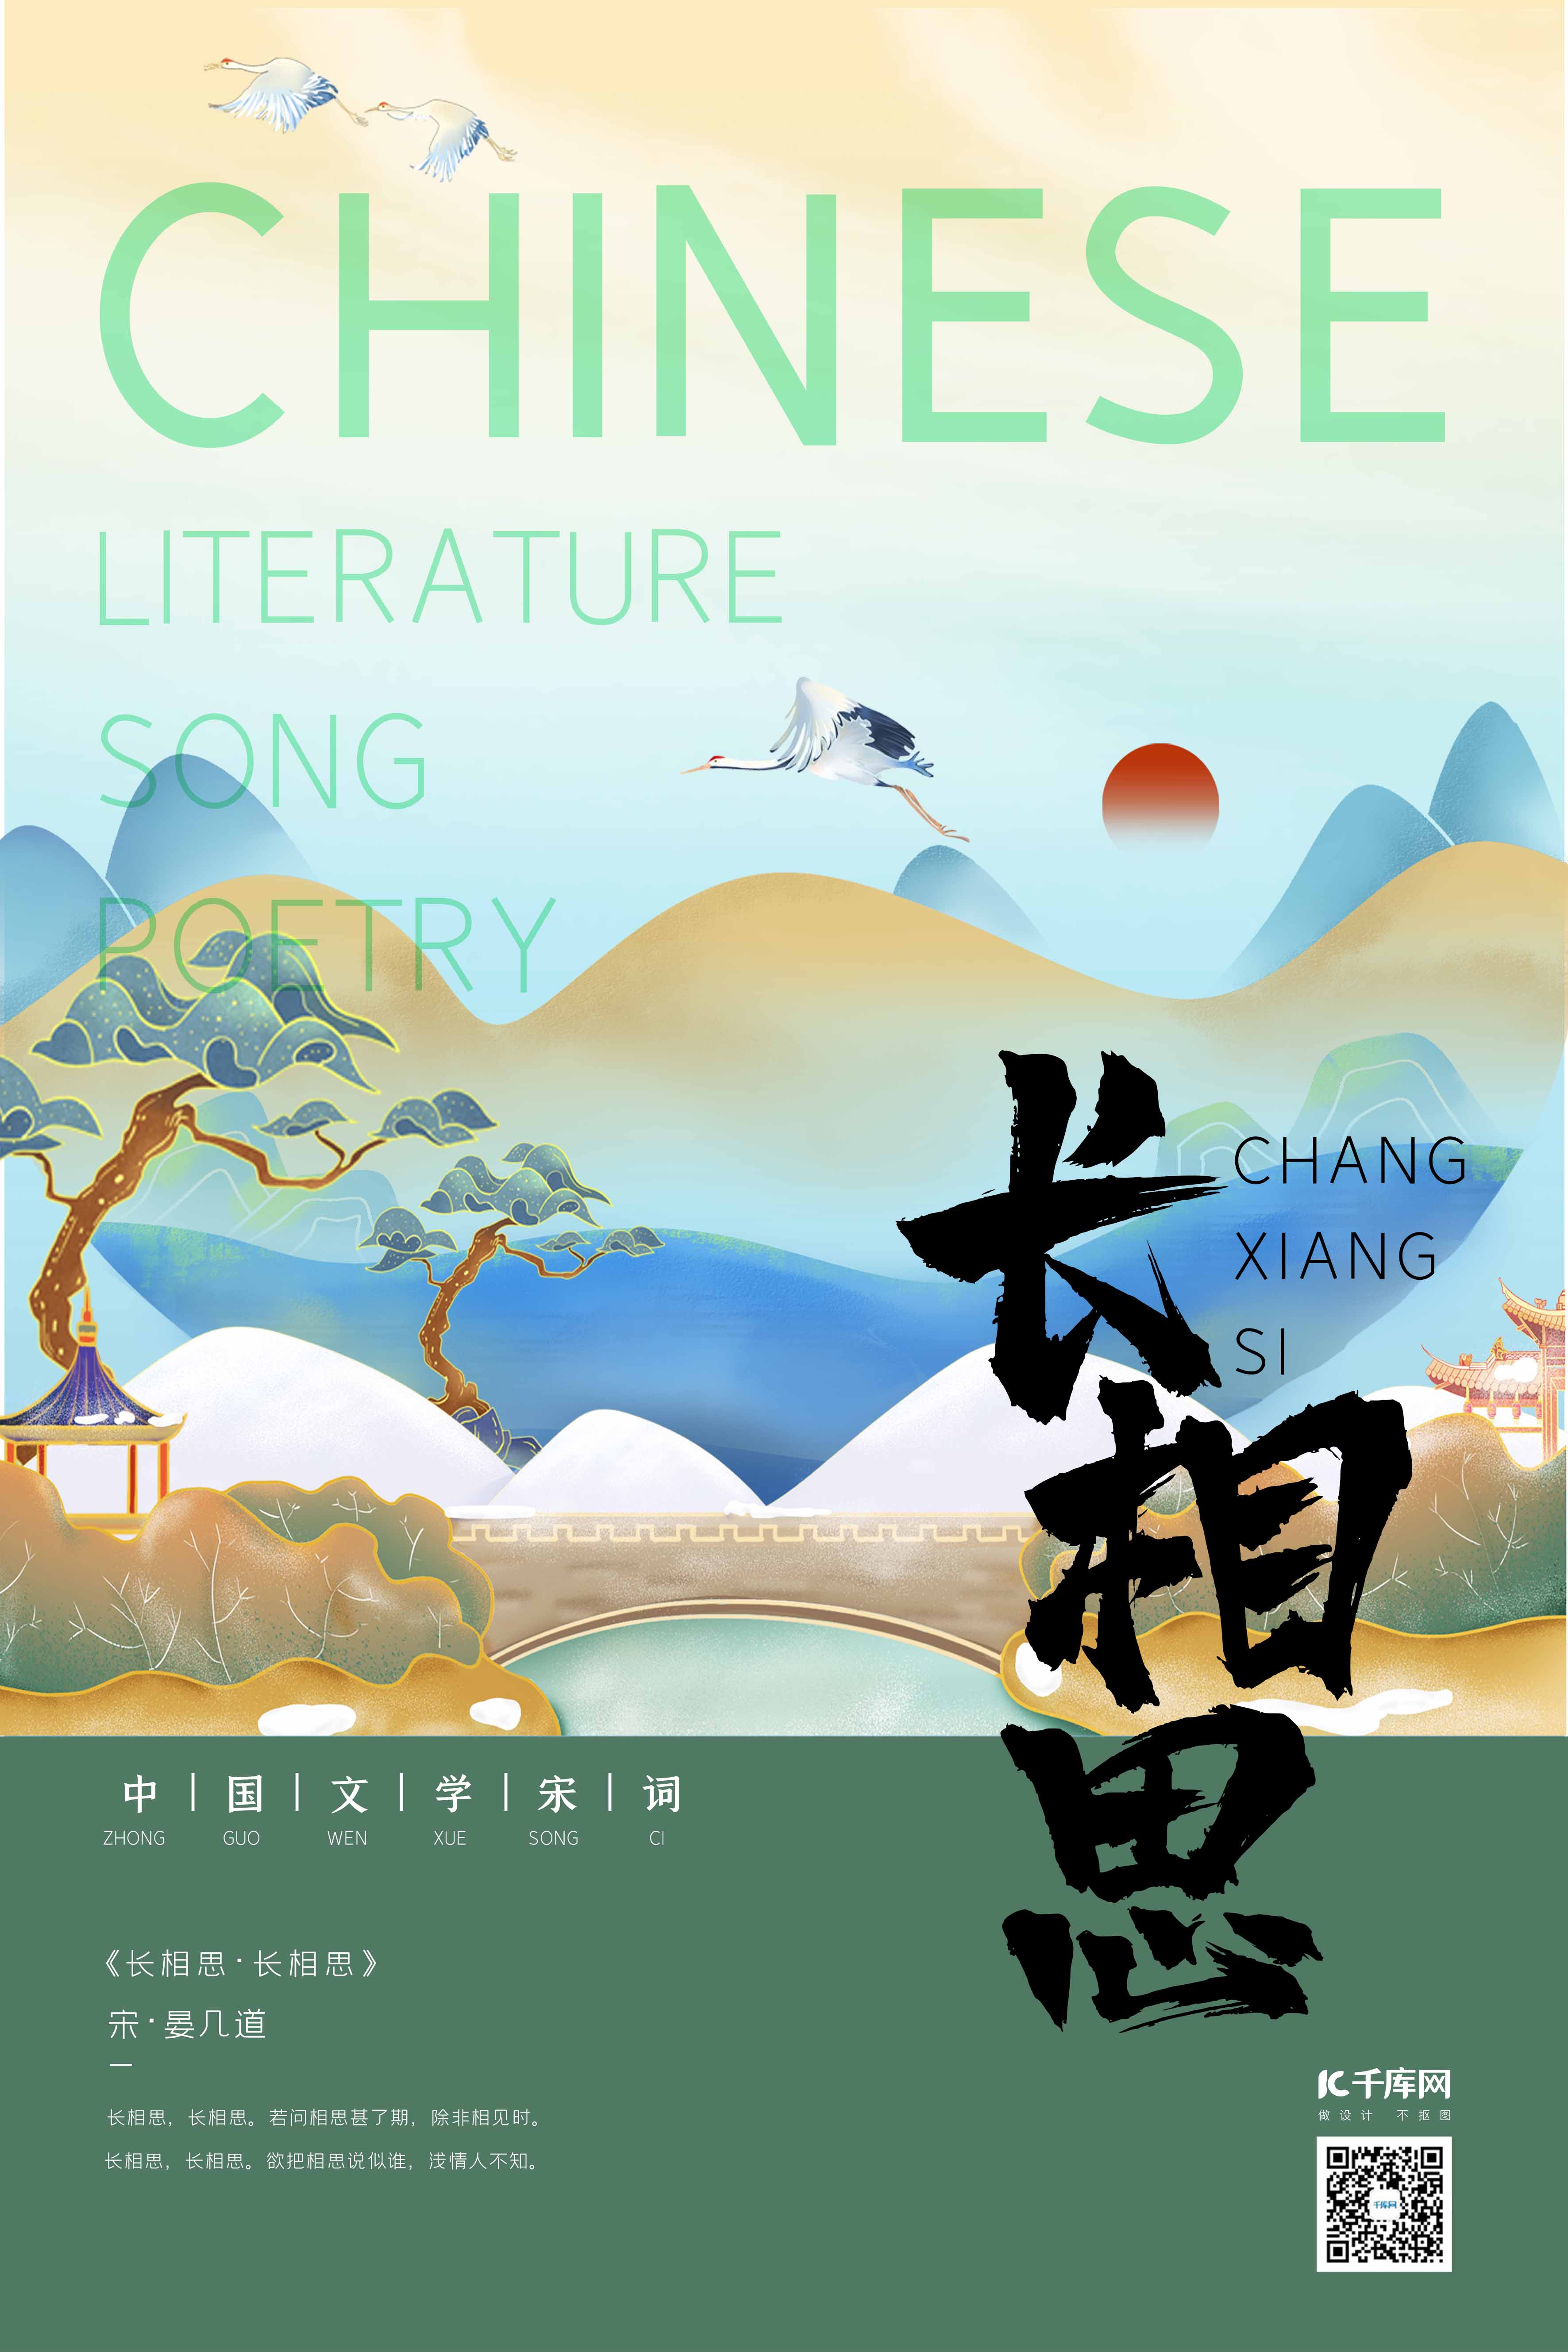 中国文化宋词长亭石桥豆沙绿新式宫廷工笔风格海报图片